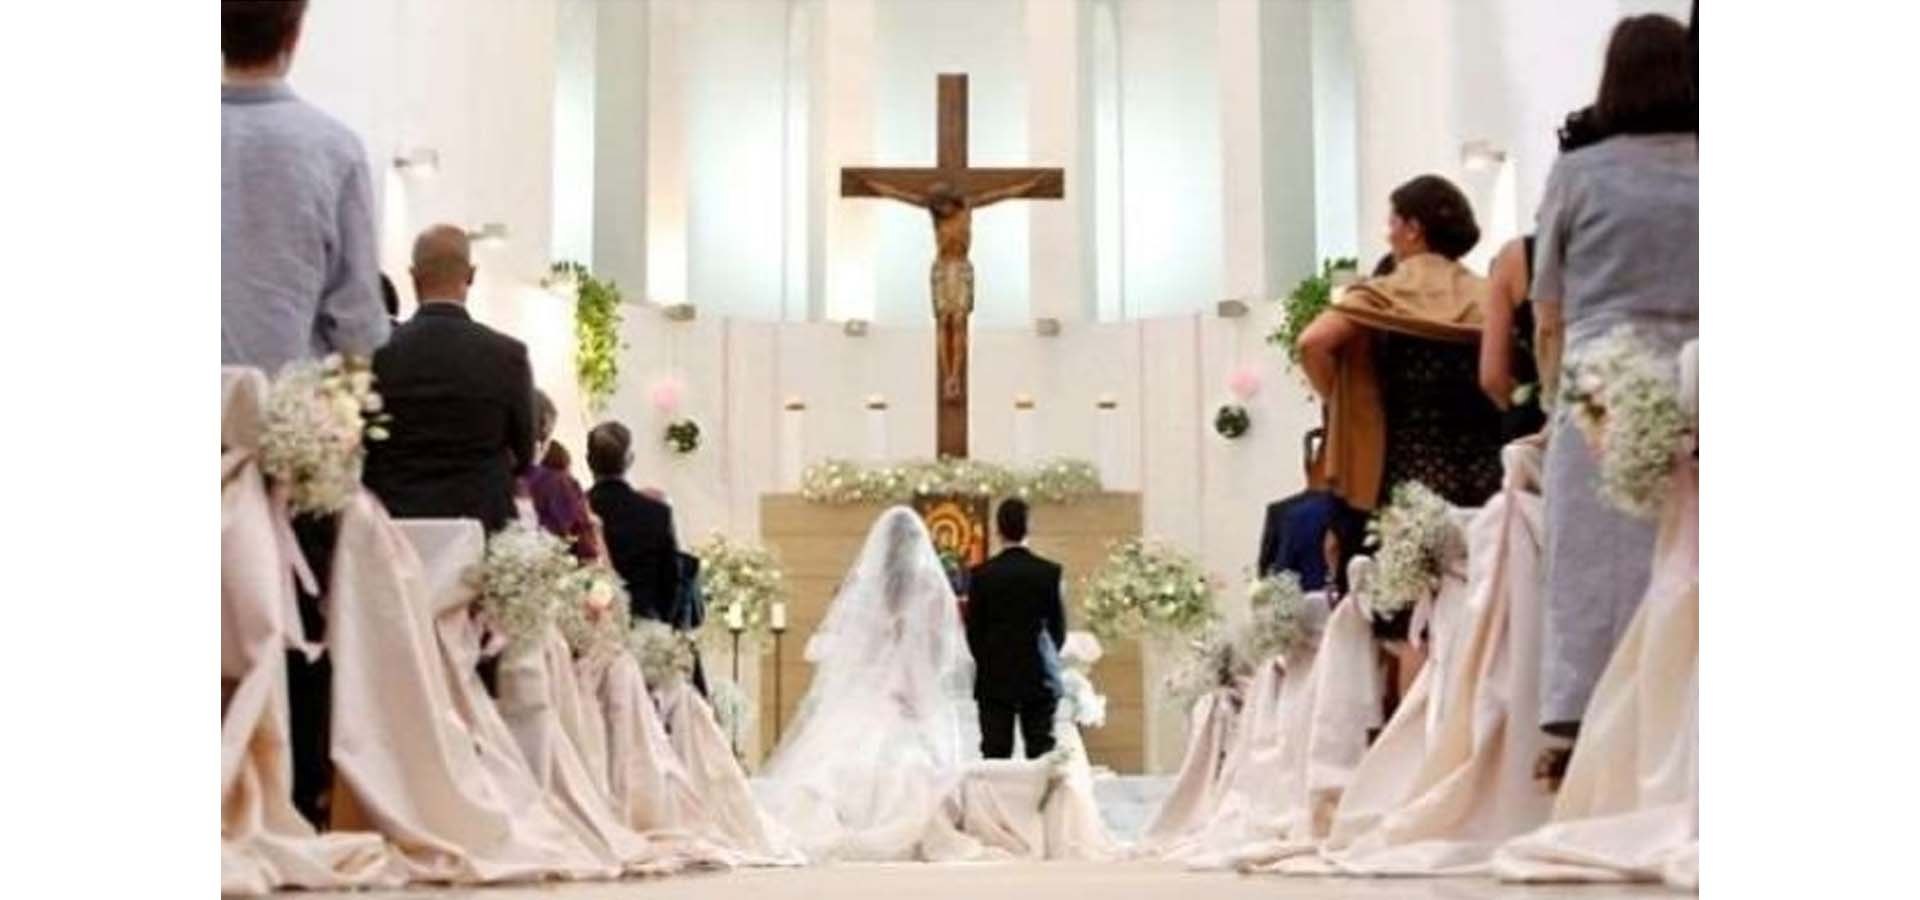 Foto Pernikahan Katolik - KibrisPDR